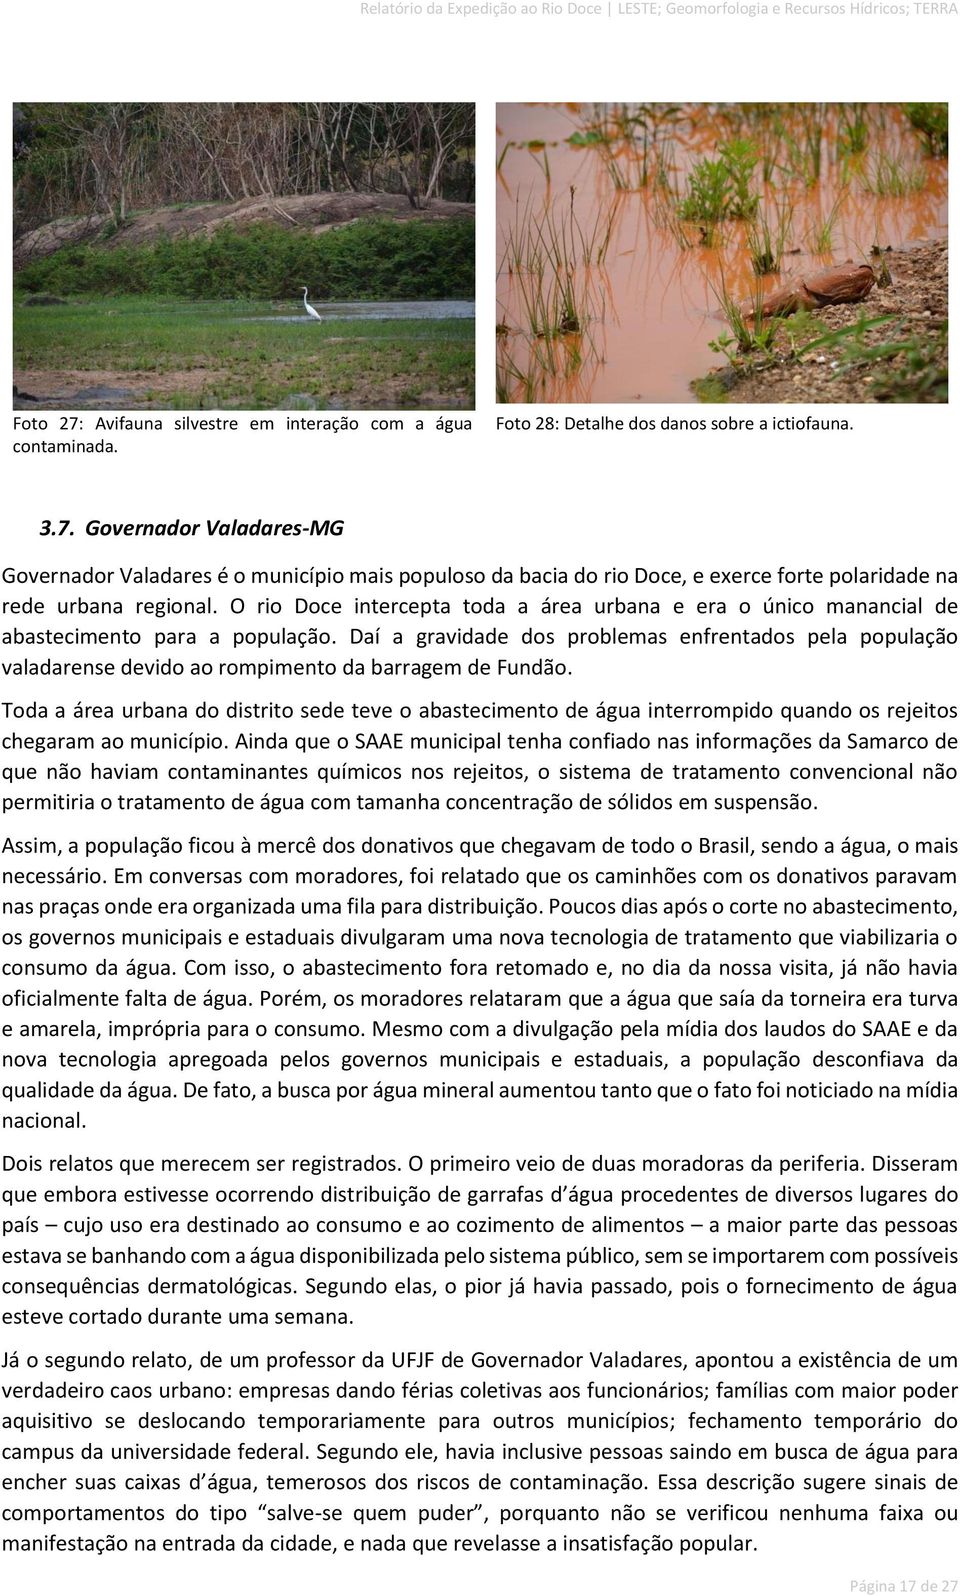 Daí a gravidade dos problemas enfrentados pela população valadarense devido ao rompimento da barragem de Fundão.